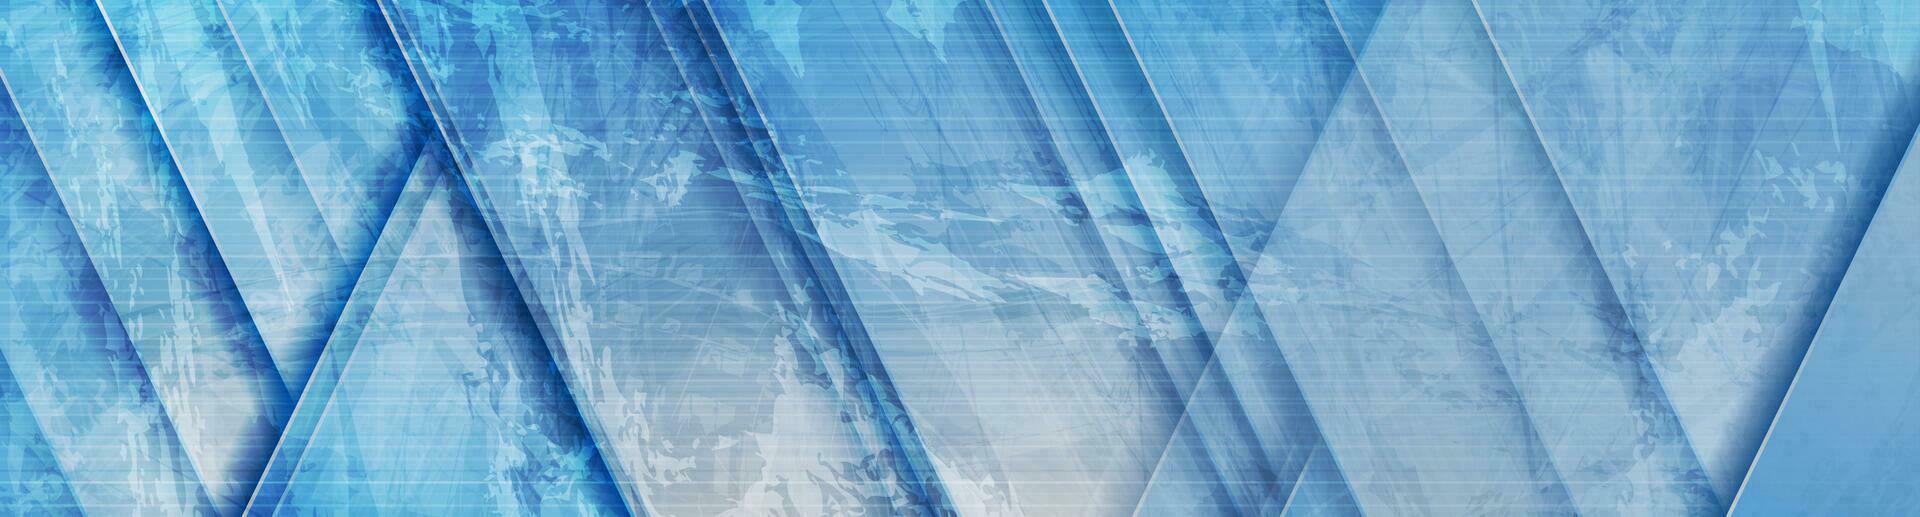 Blau Grunge abstrakt Technik Vektor Hintergrund